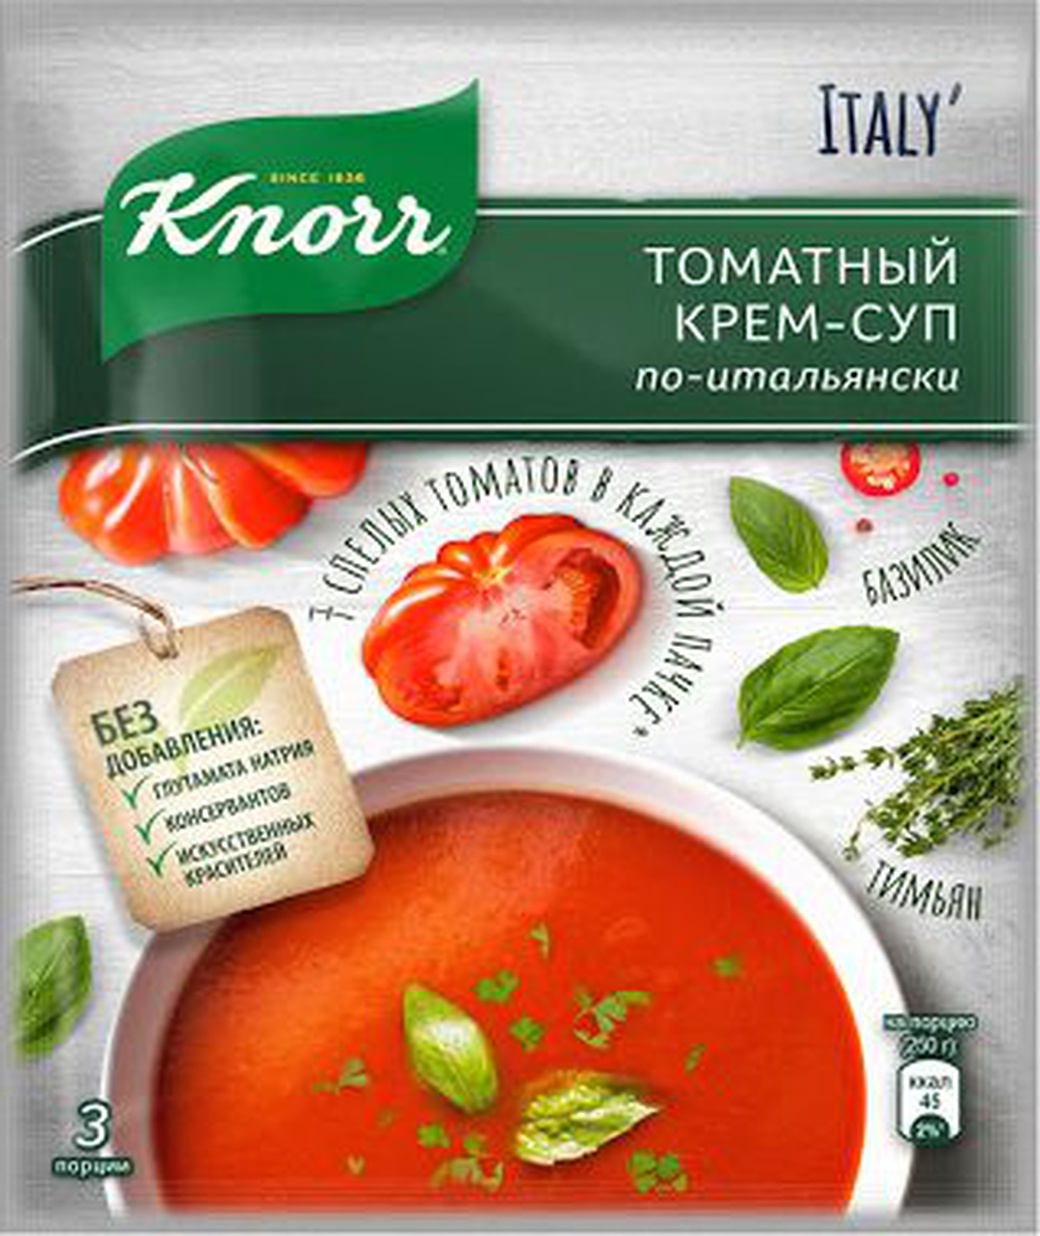 Крем-суп Knorr по-итальянски томатный 51гр фото